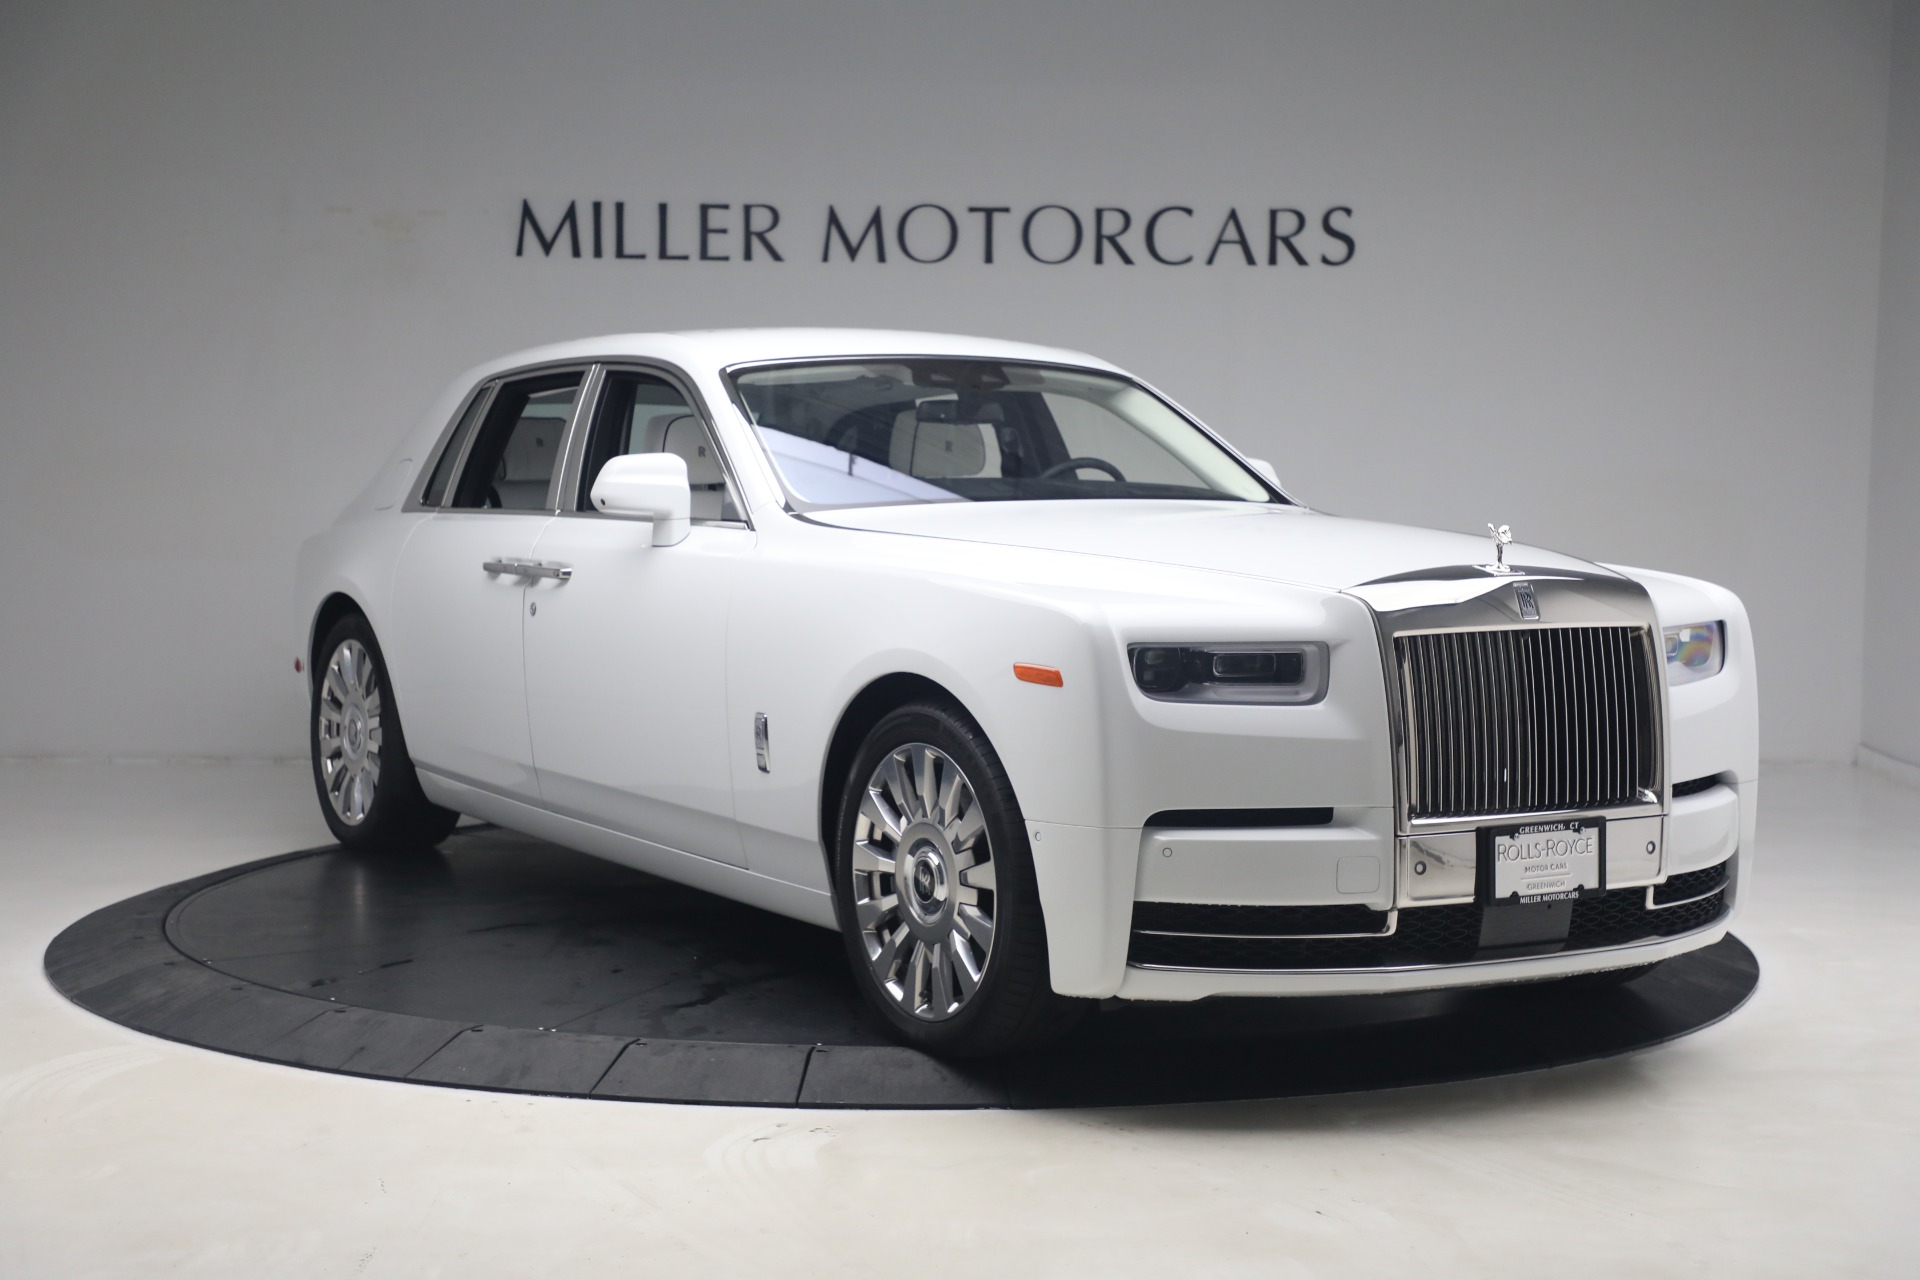 New 2020 Rolls Royce Phantom For Sale 545 200 Miller Motorcars Stock R537